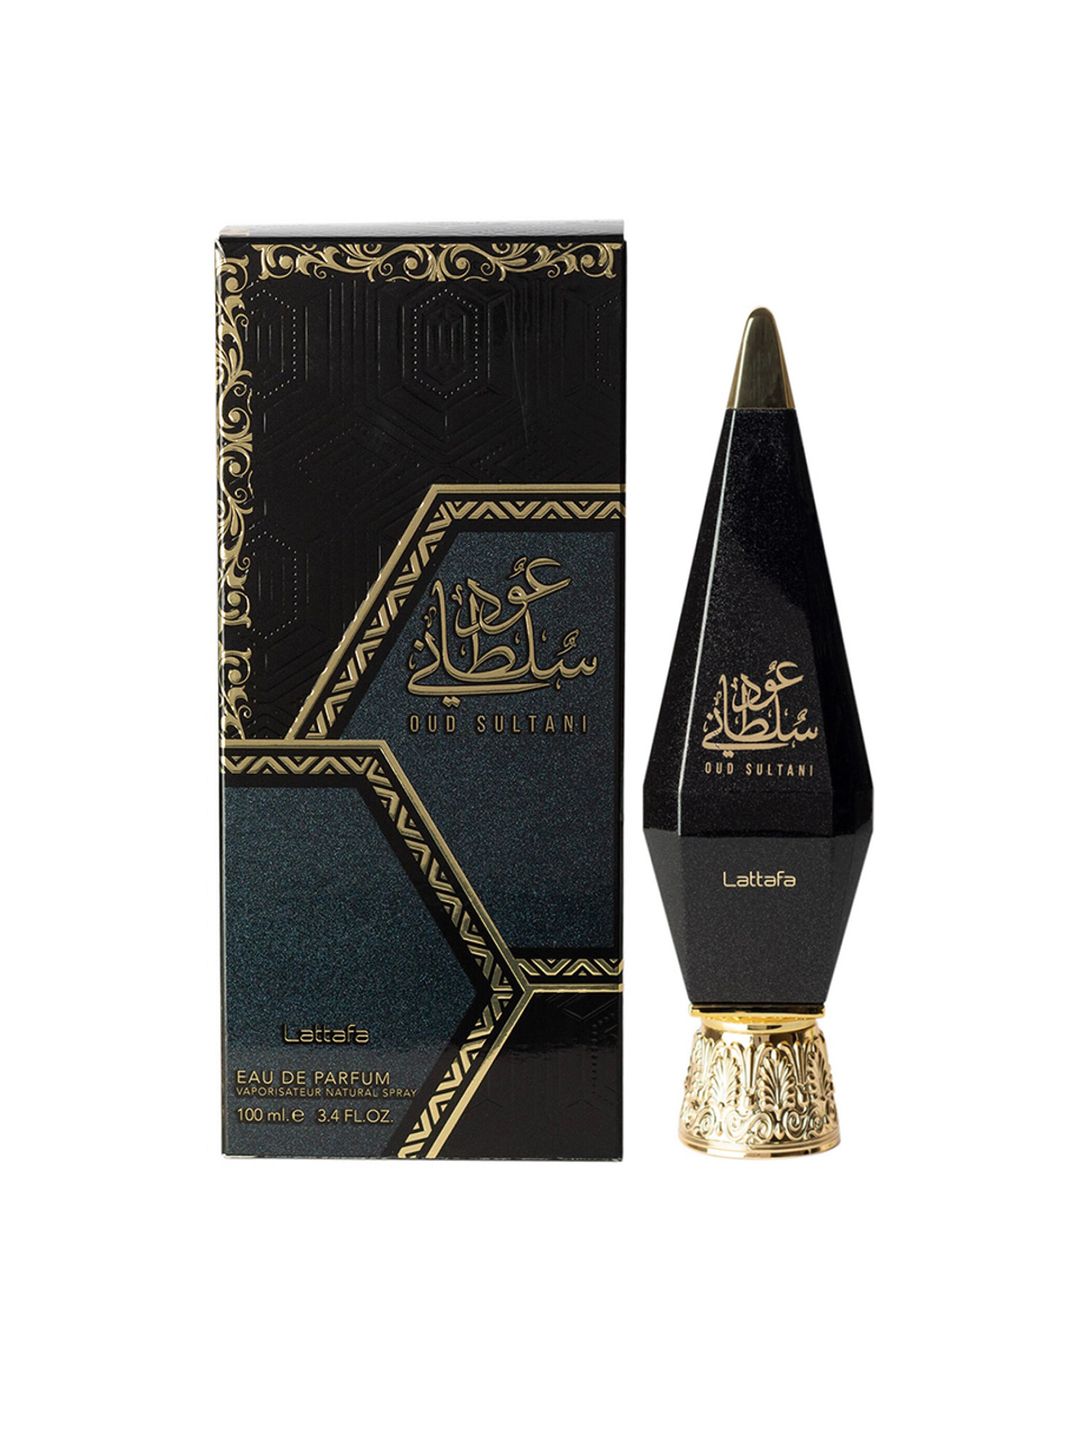 Lattafa Musk Sultani Eau De Perfum 100ml Price in India